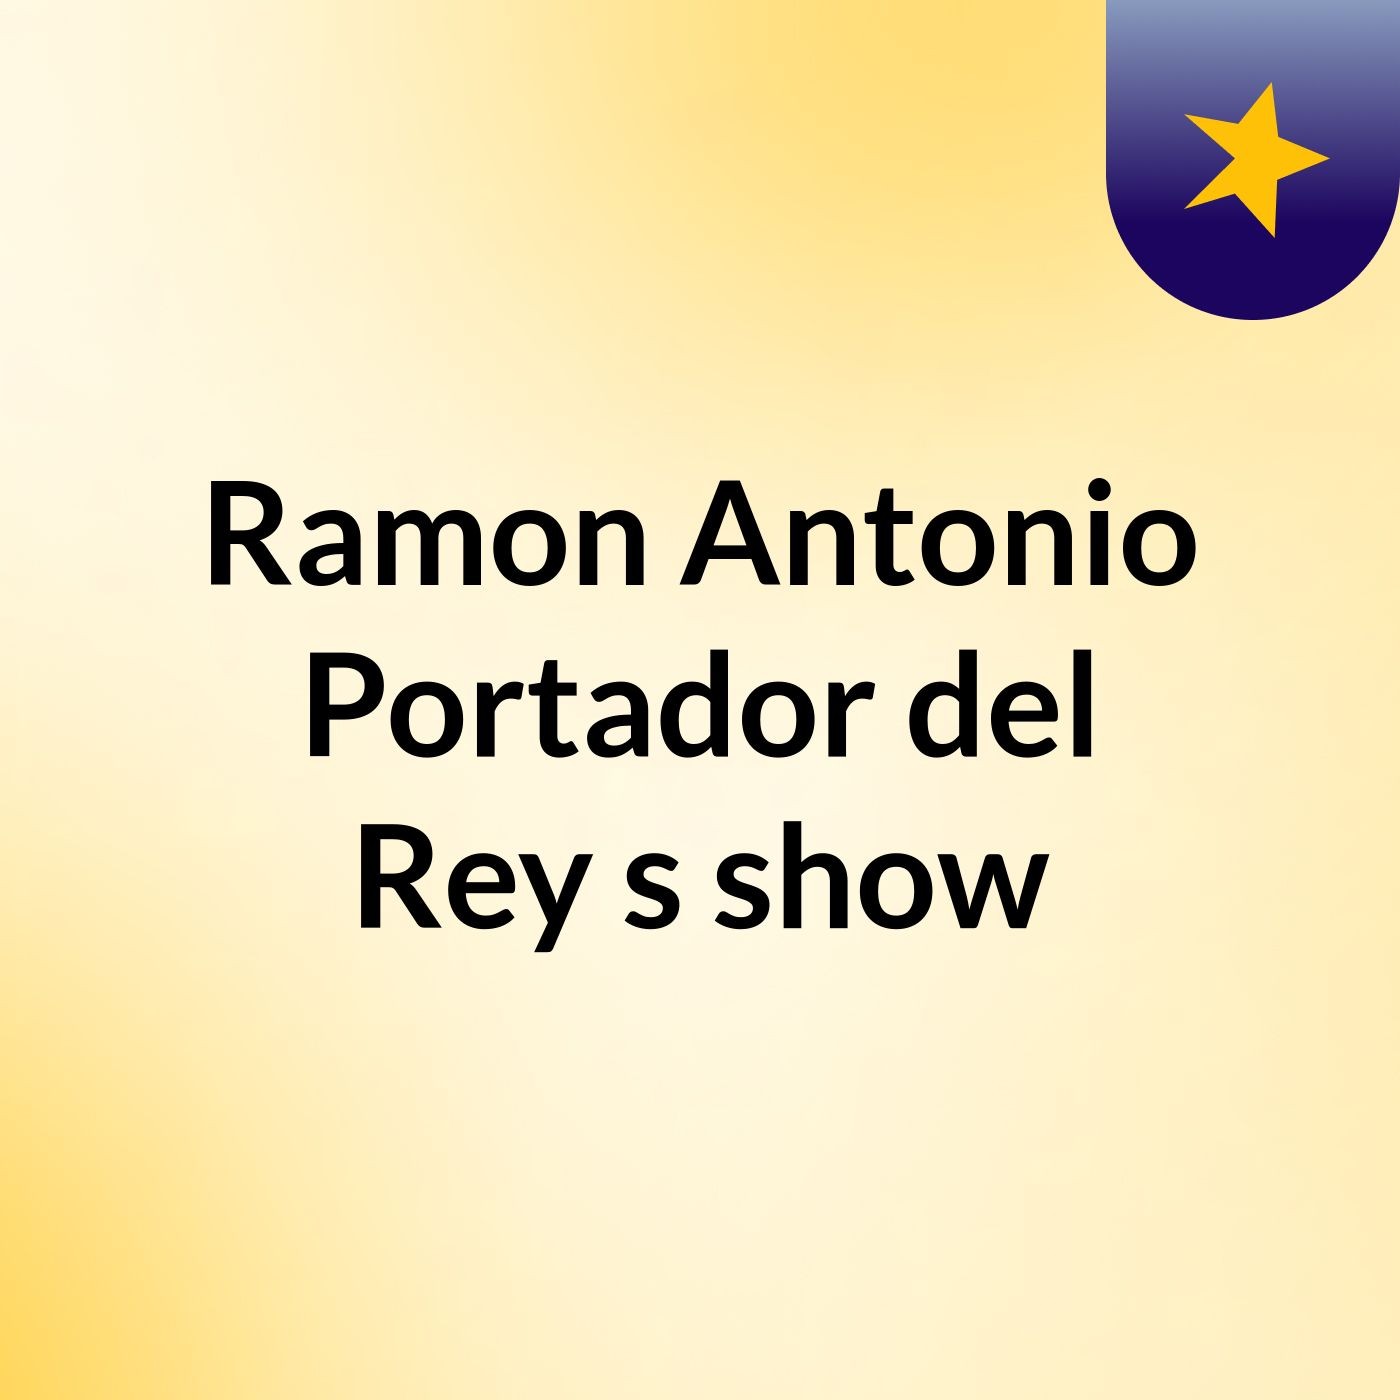 Ramon Antonio Portador del Rey's show